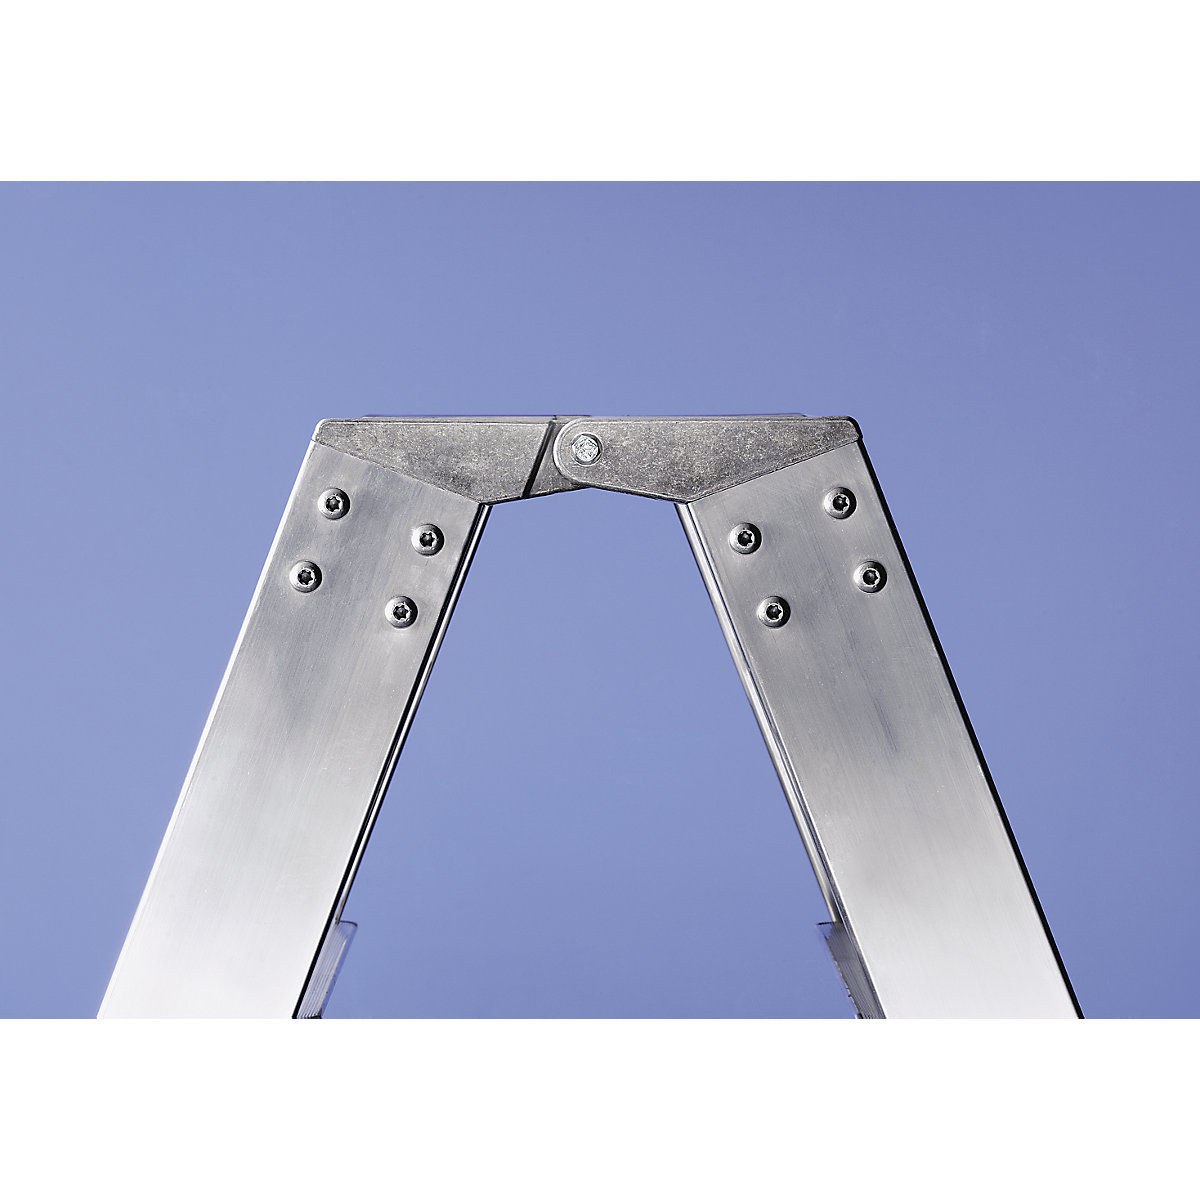 Escalera tipo tijera de peldaños planos, ascenso por ambos lados – MUNK (Imagen del producto 17)-16